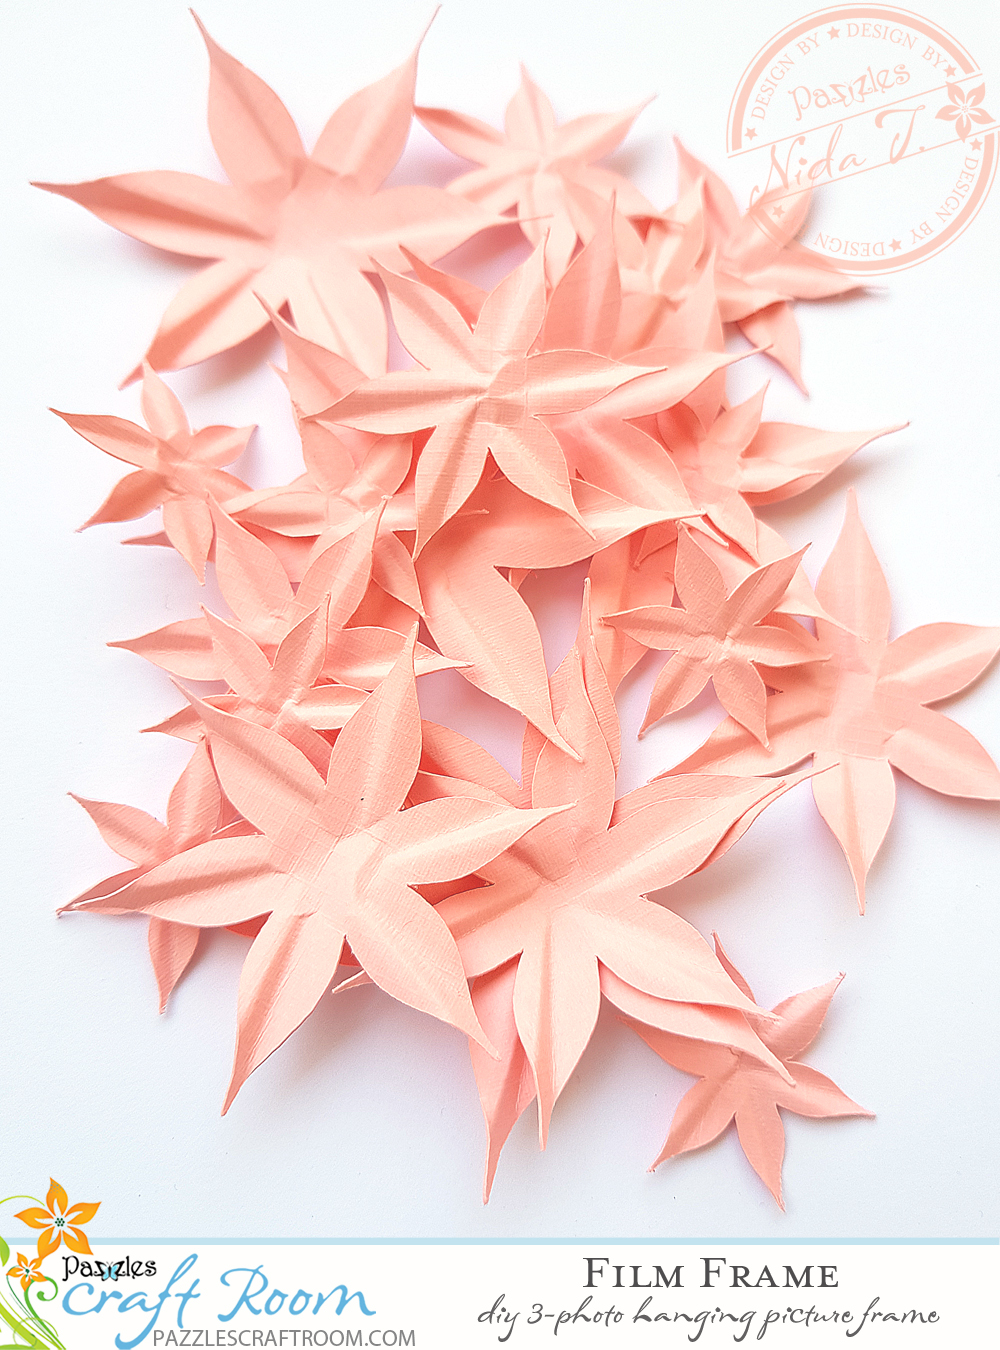 Pazzles DIY Paper Flowers by Nida Tanweer